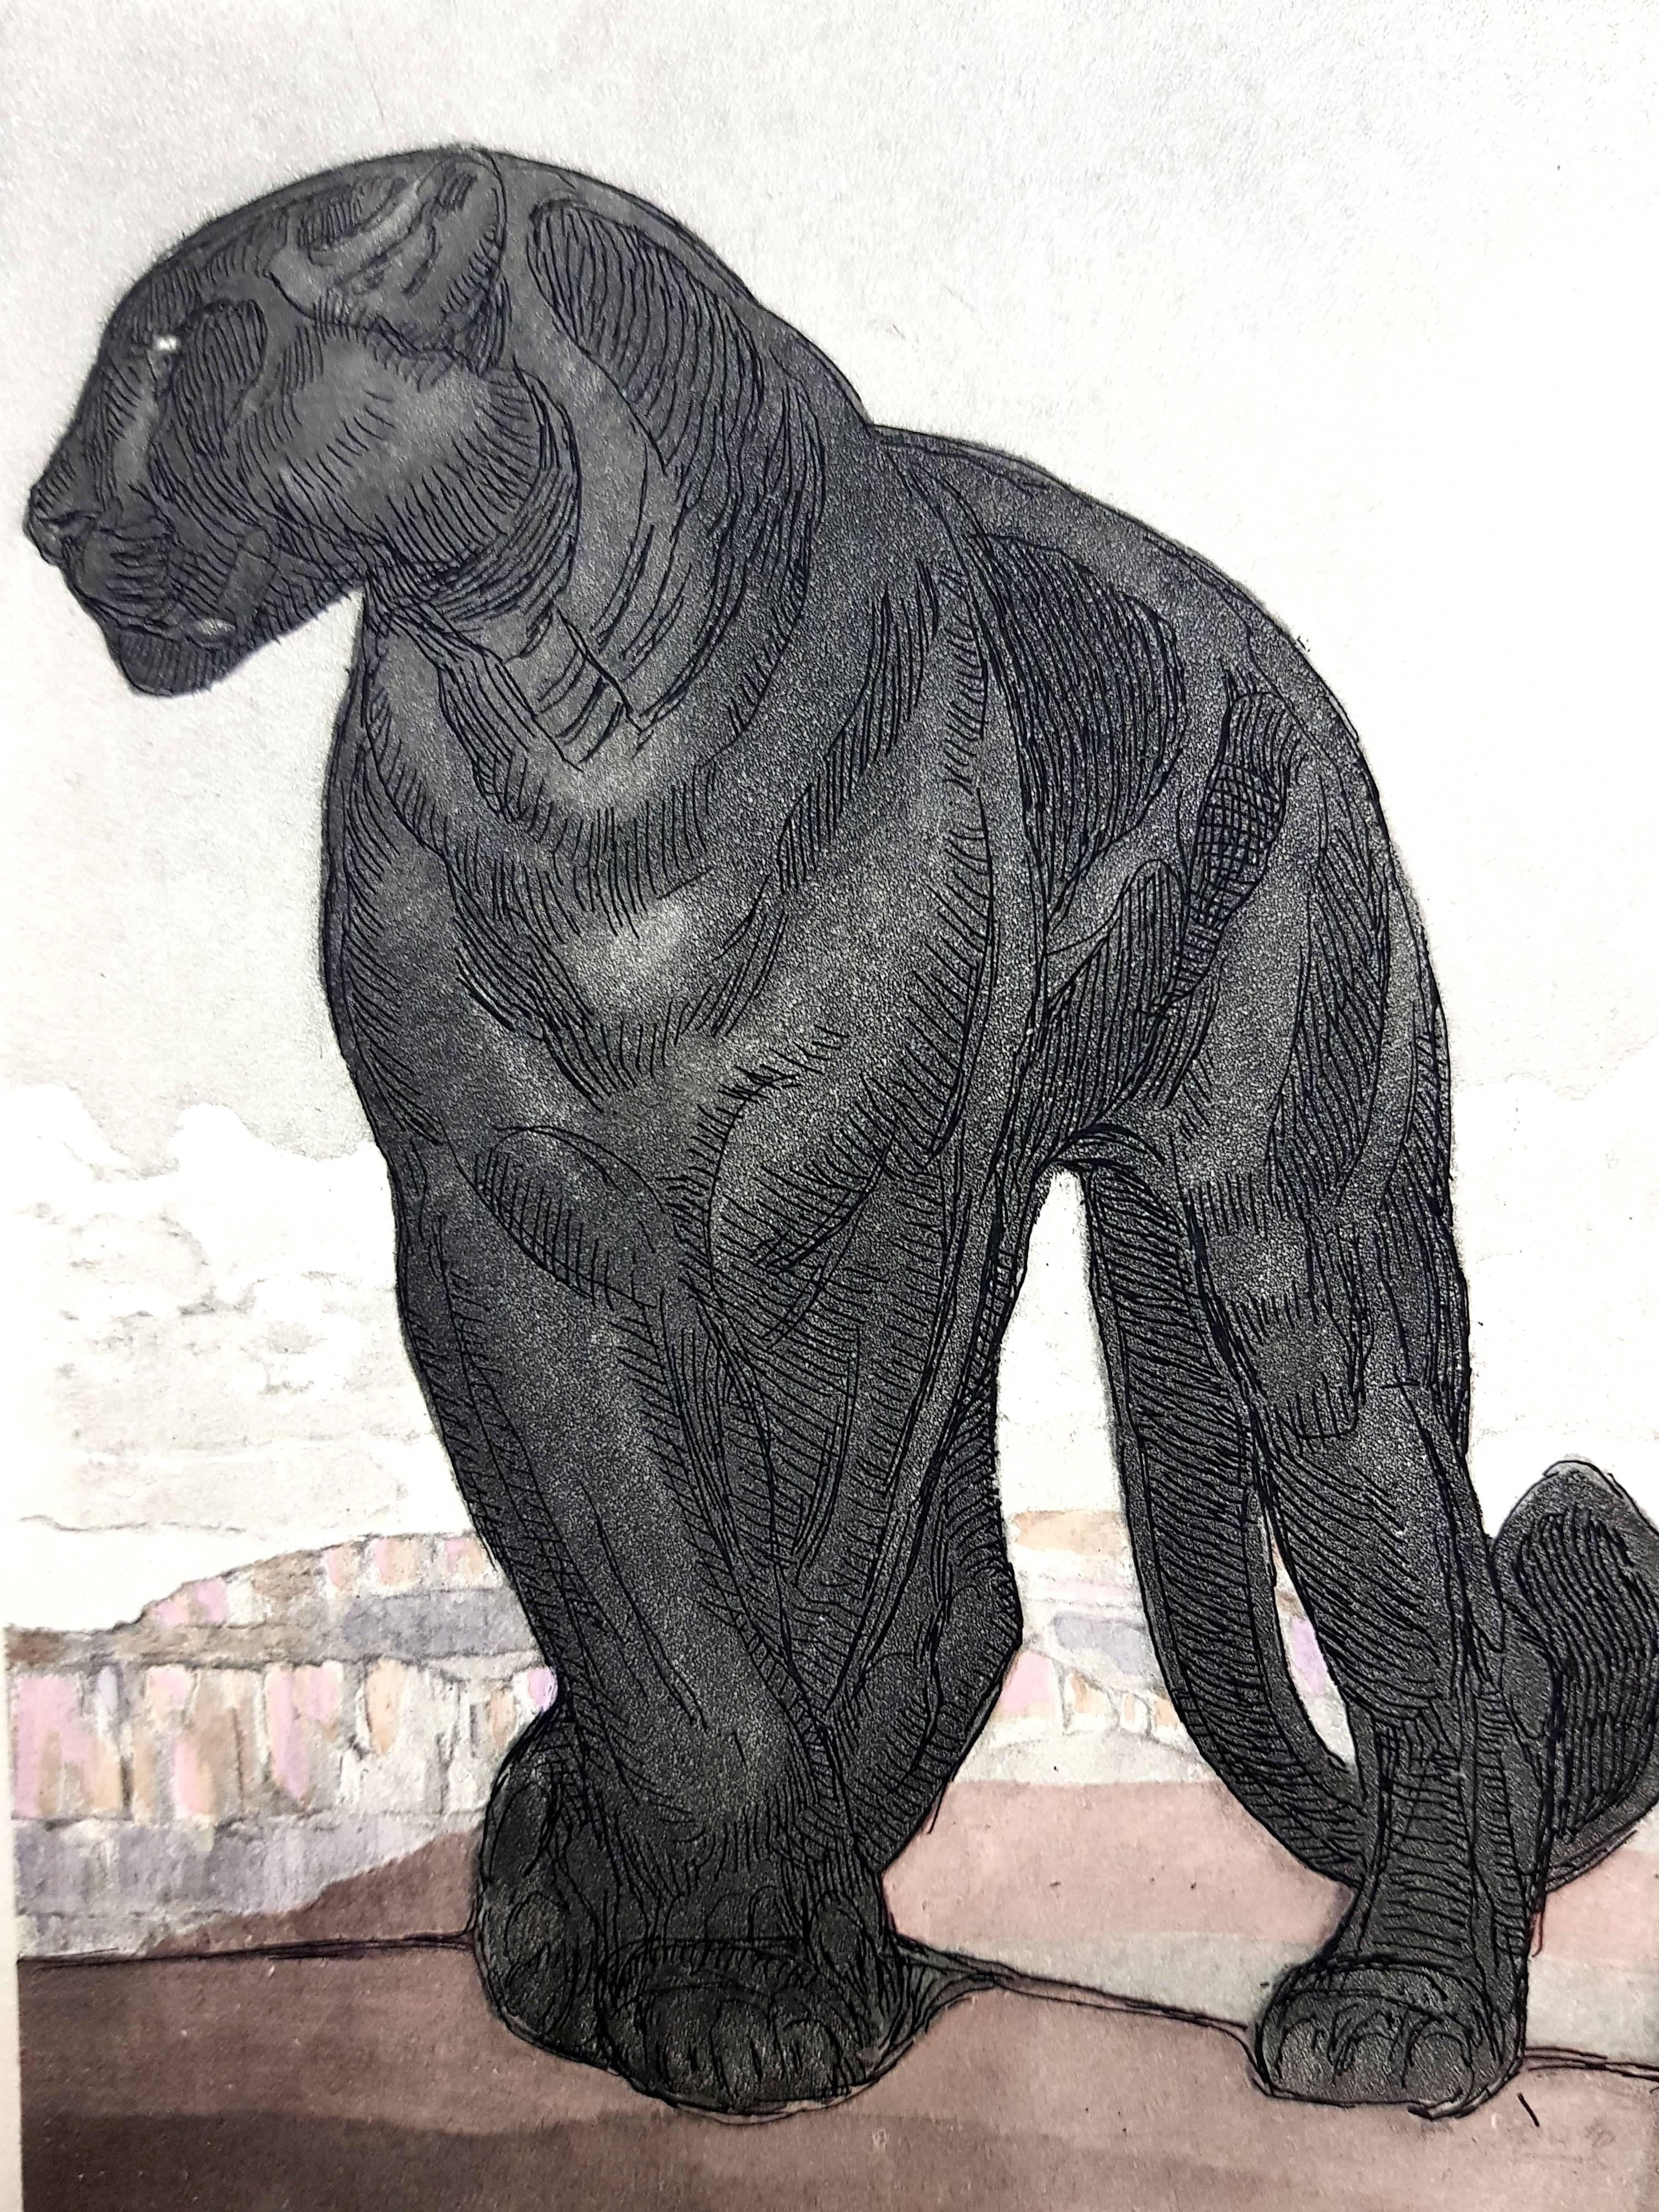 Paul Jouve - Black Leopard - Original Engraving - Print by Pierre-Paul Jouve